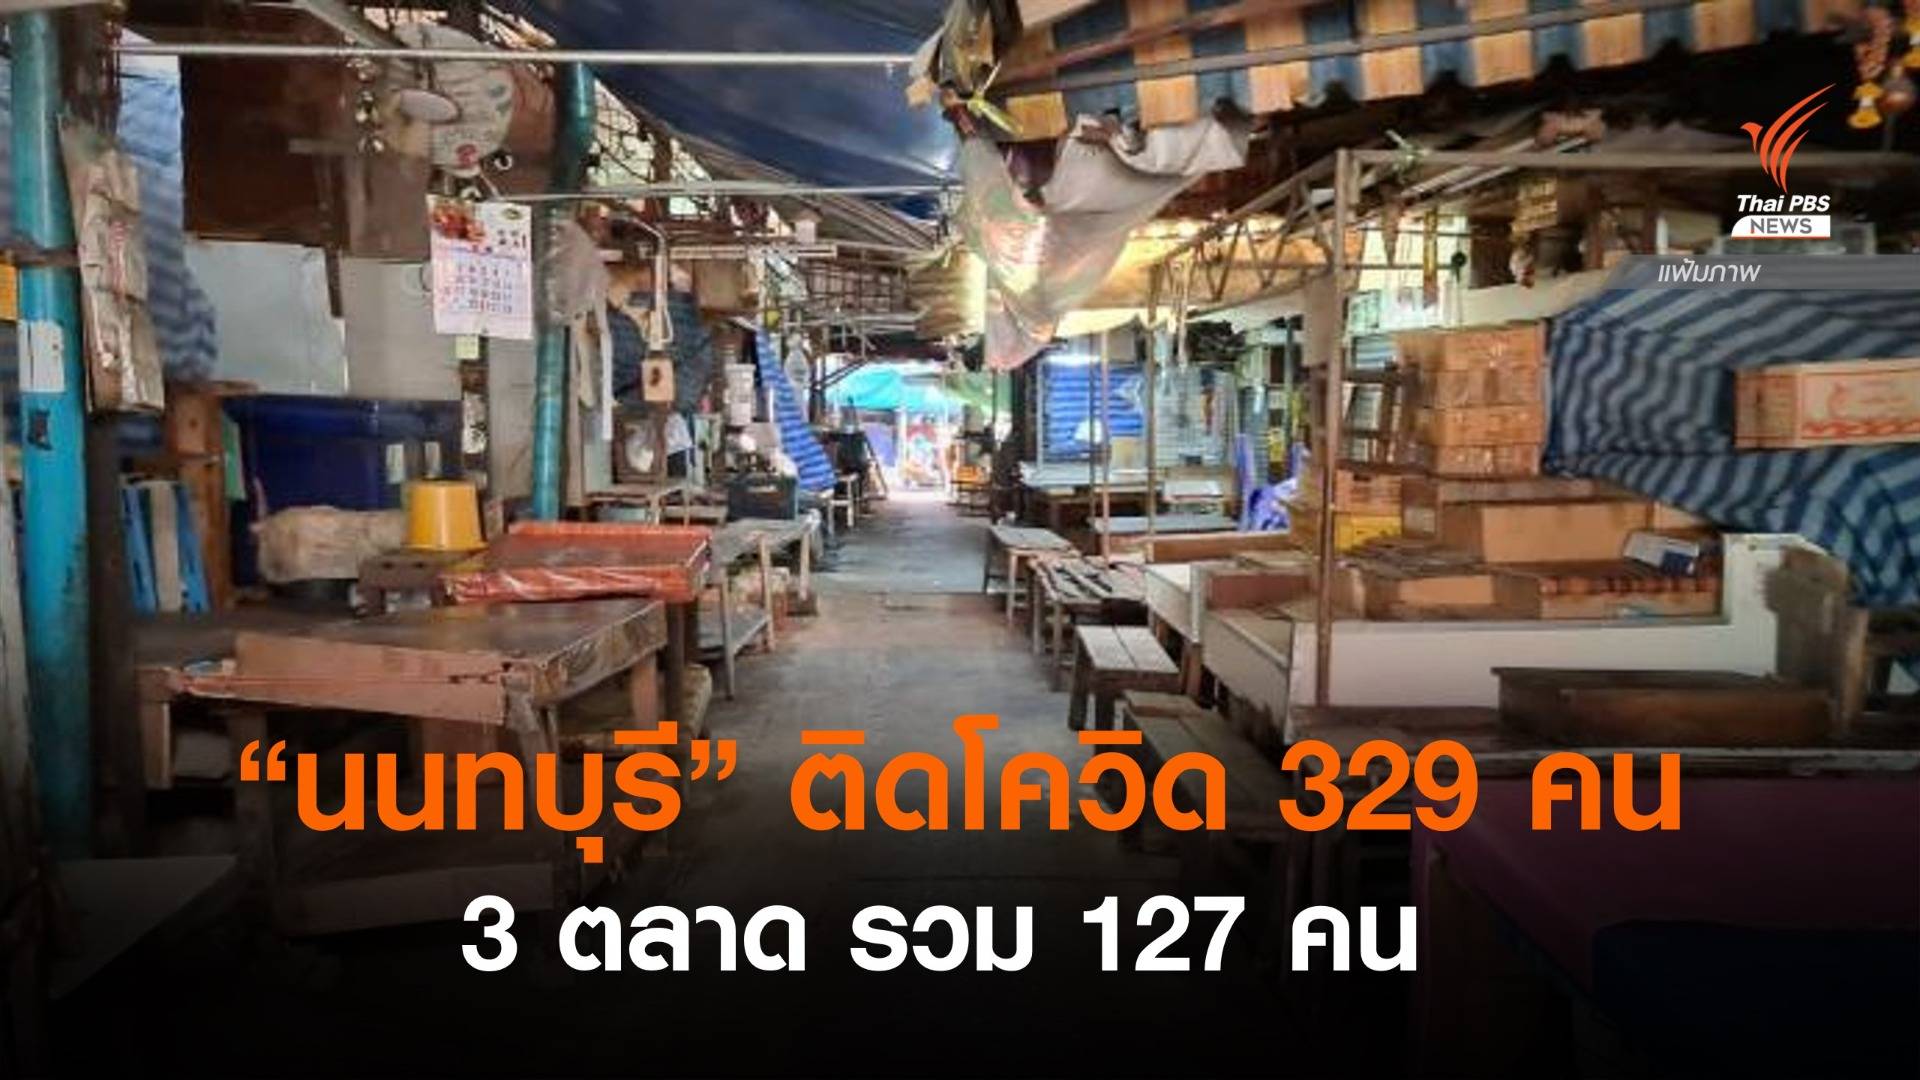 "นนทบุรี" ติดโควิดเพิ่ม 329 คน มากสุด 3 ตลาด รวม 127  คน 